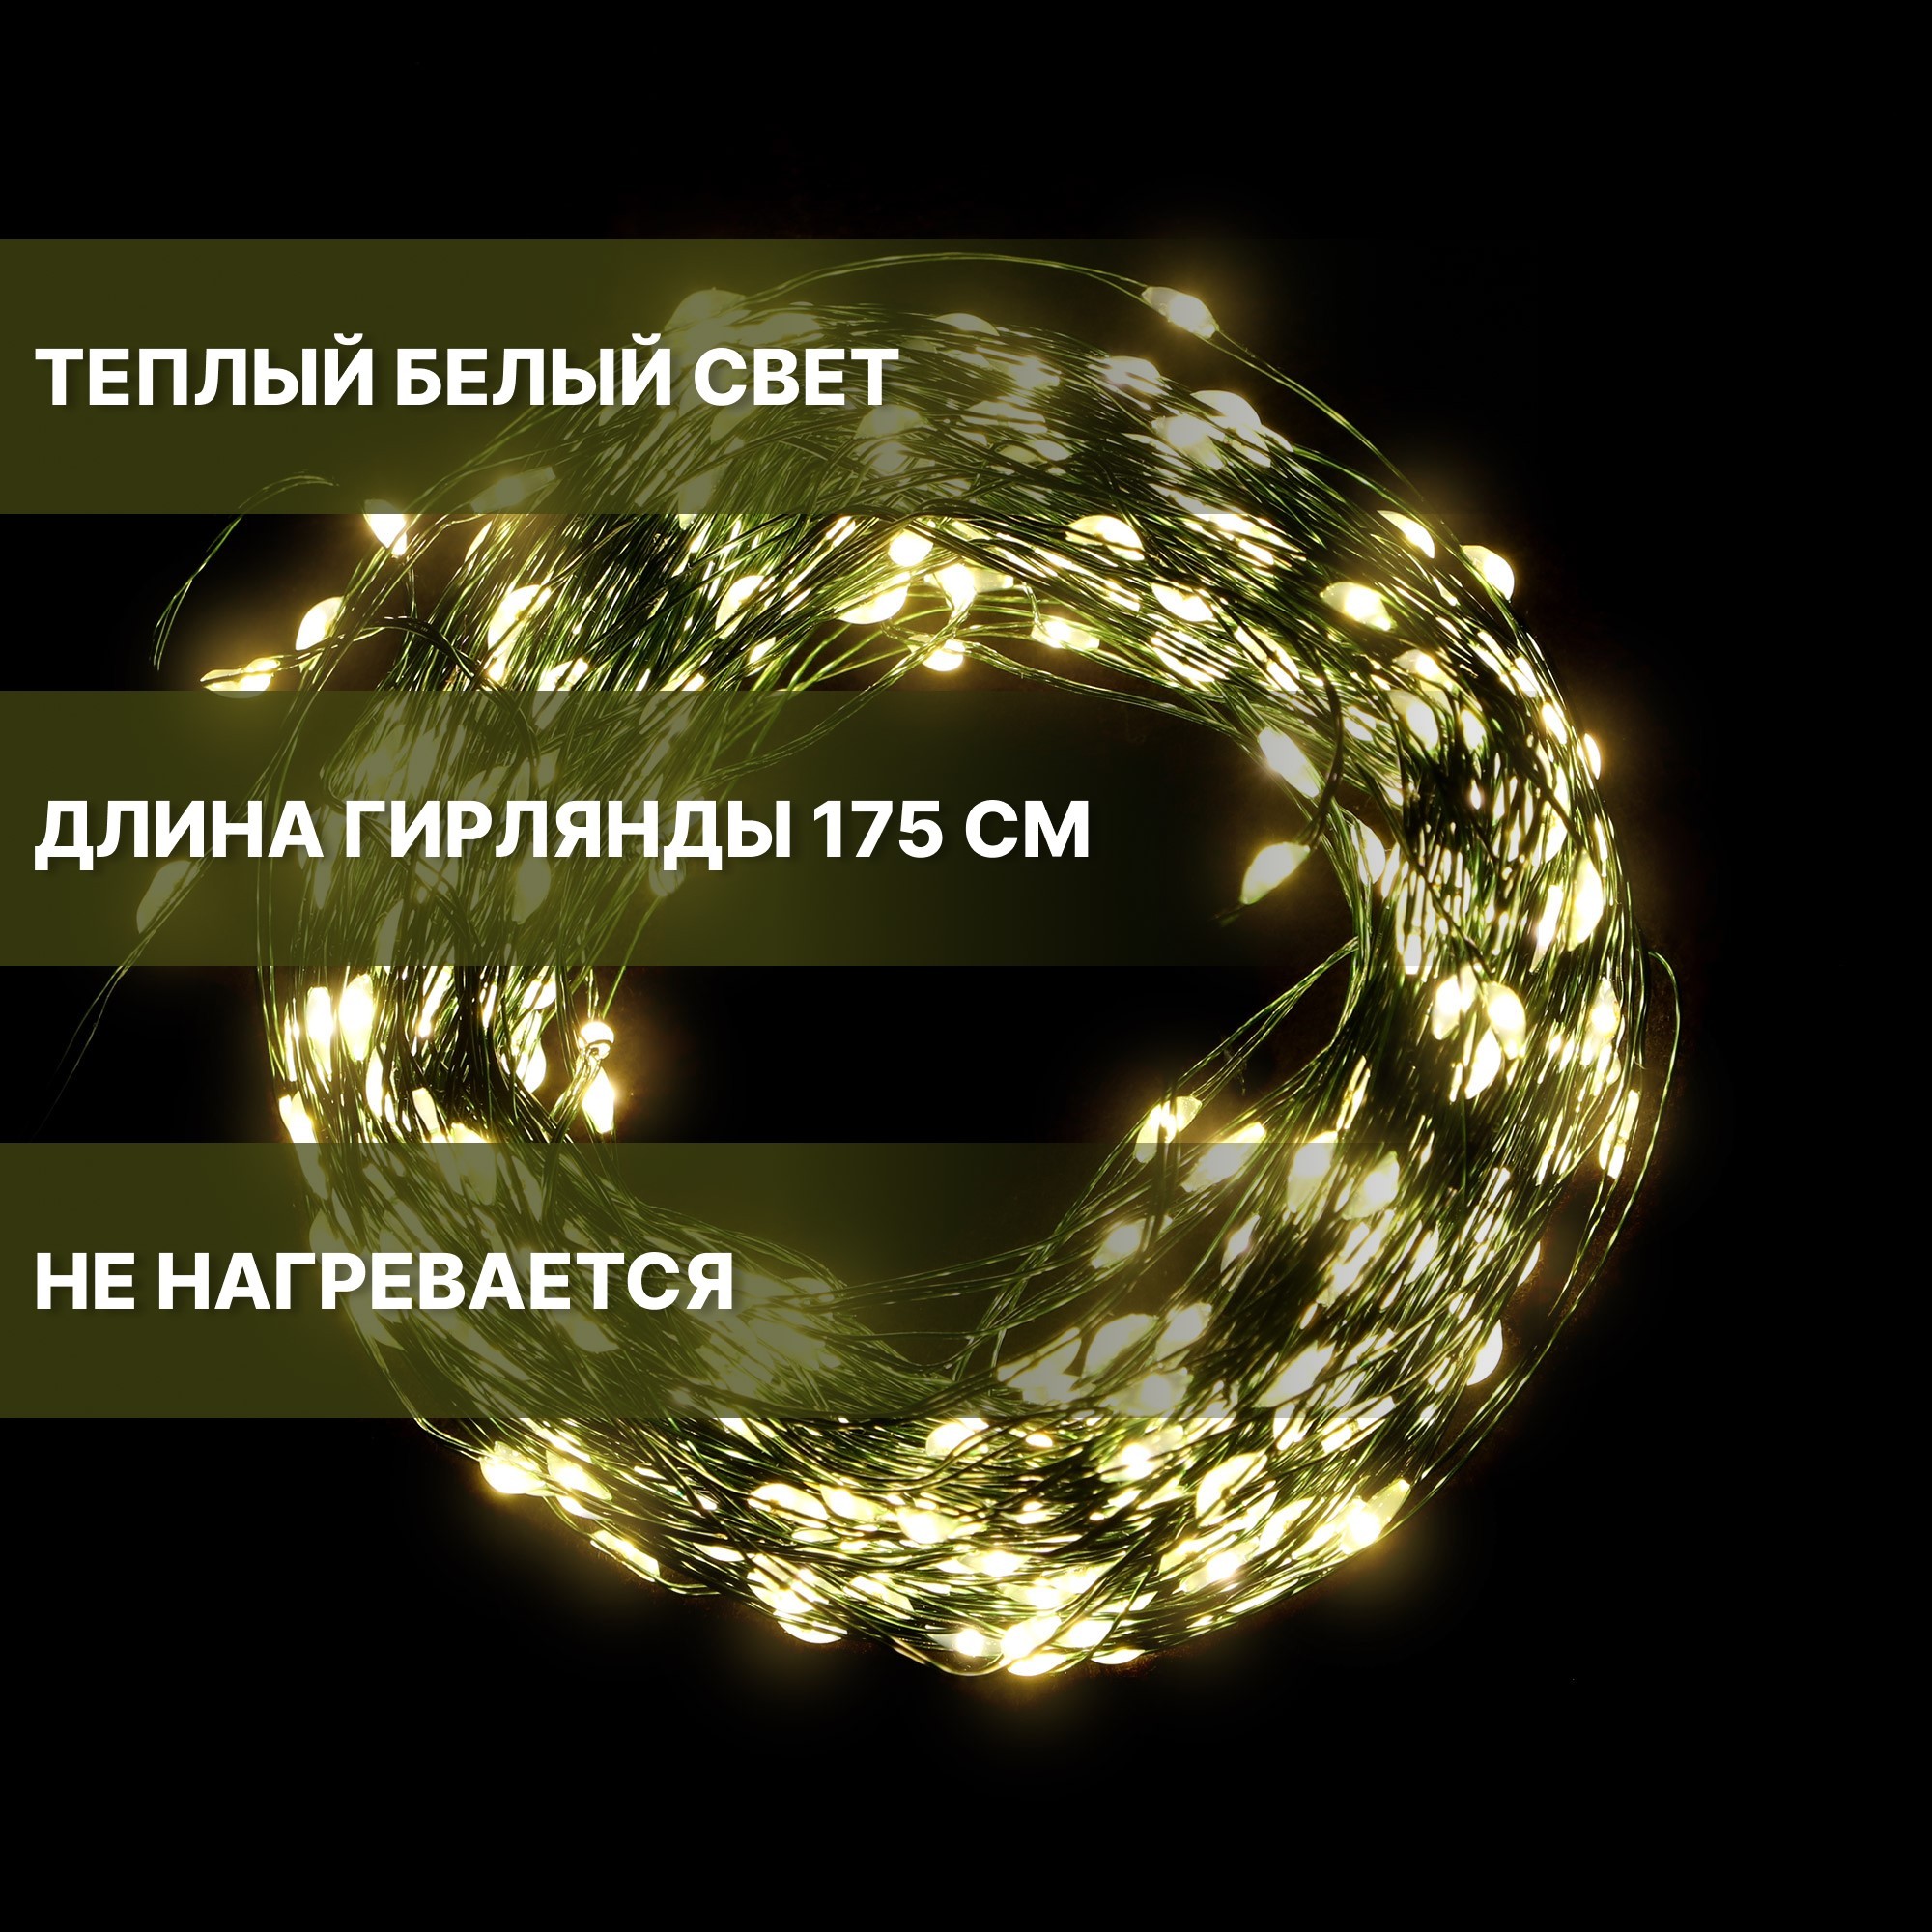 Электрогирлянда Best Technology 1440 LED 175 см со стартовым шнуром, цвет зеленый - фото 6